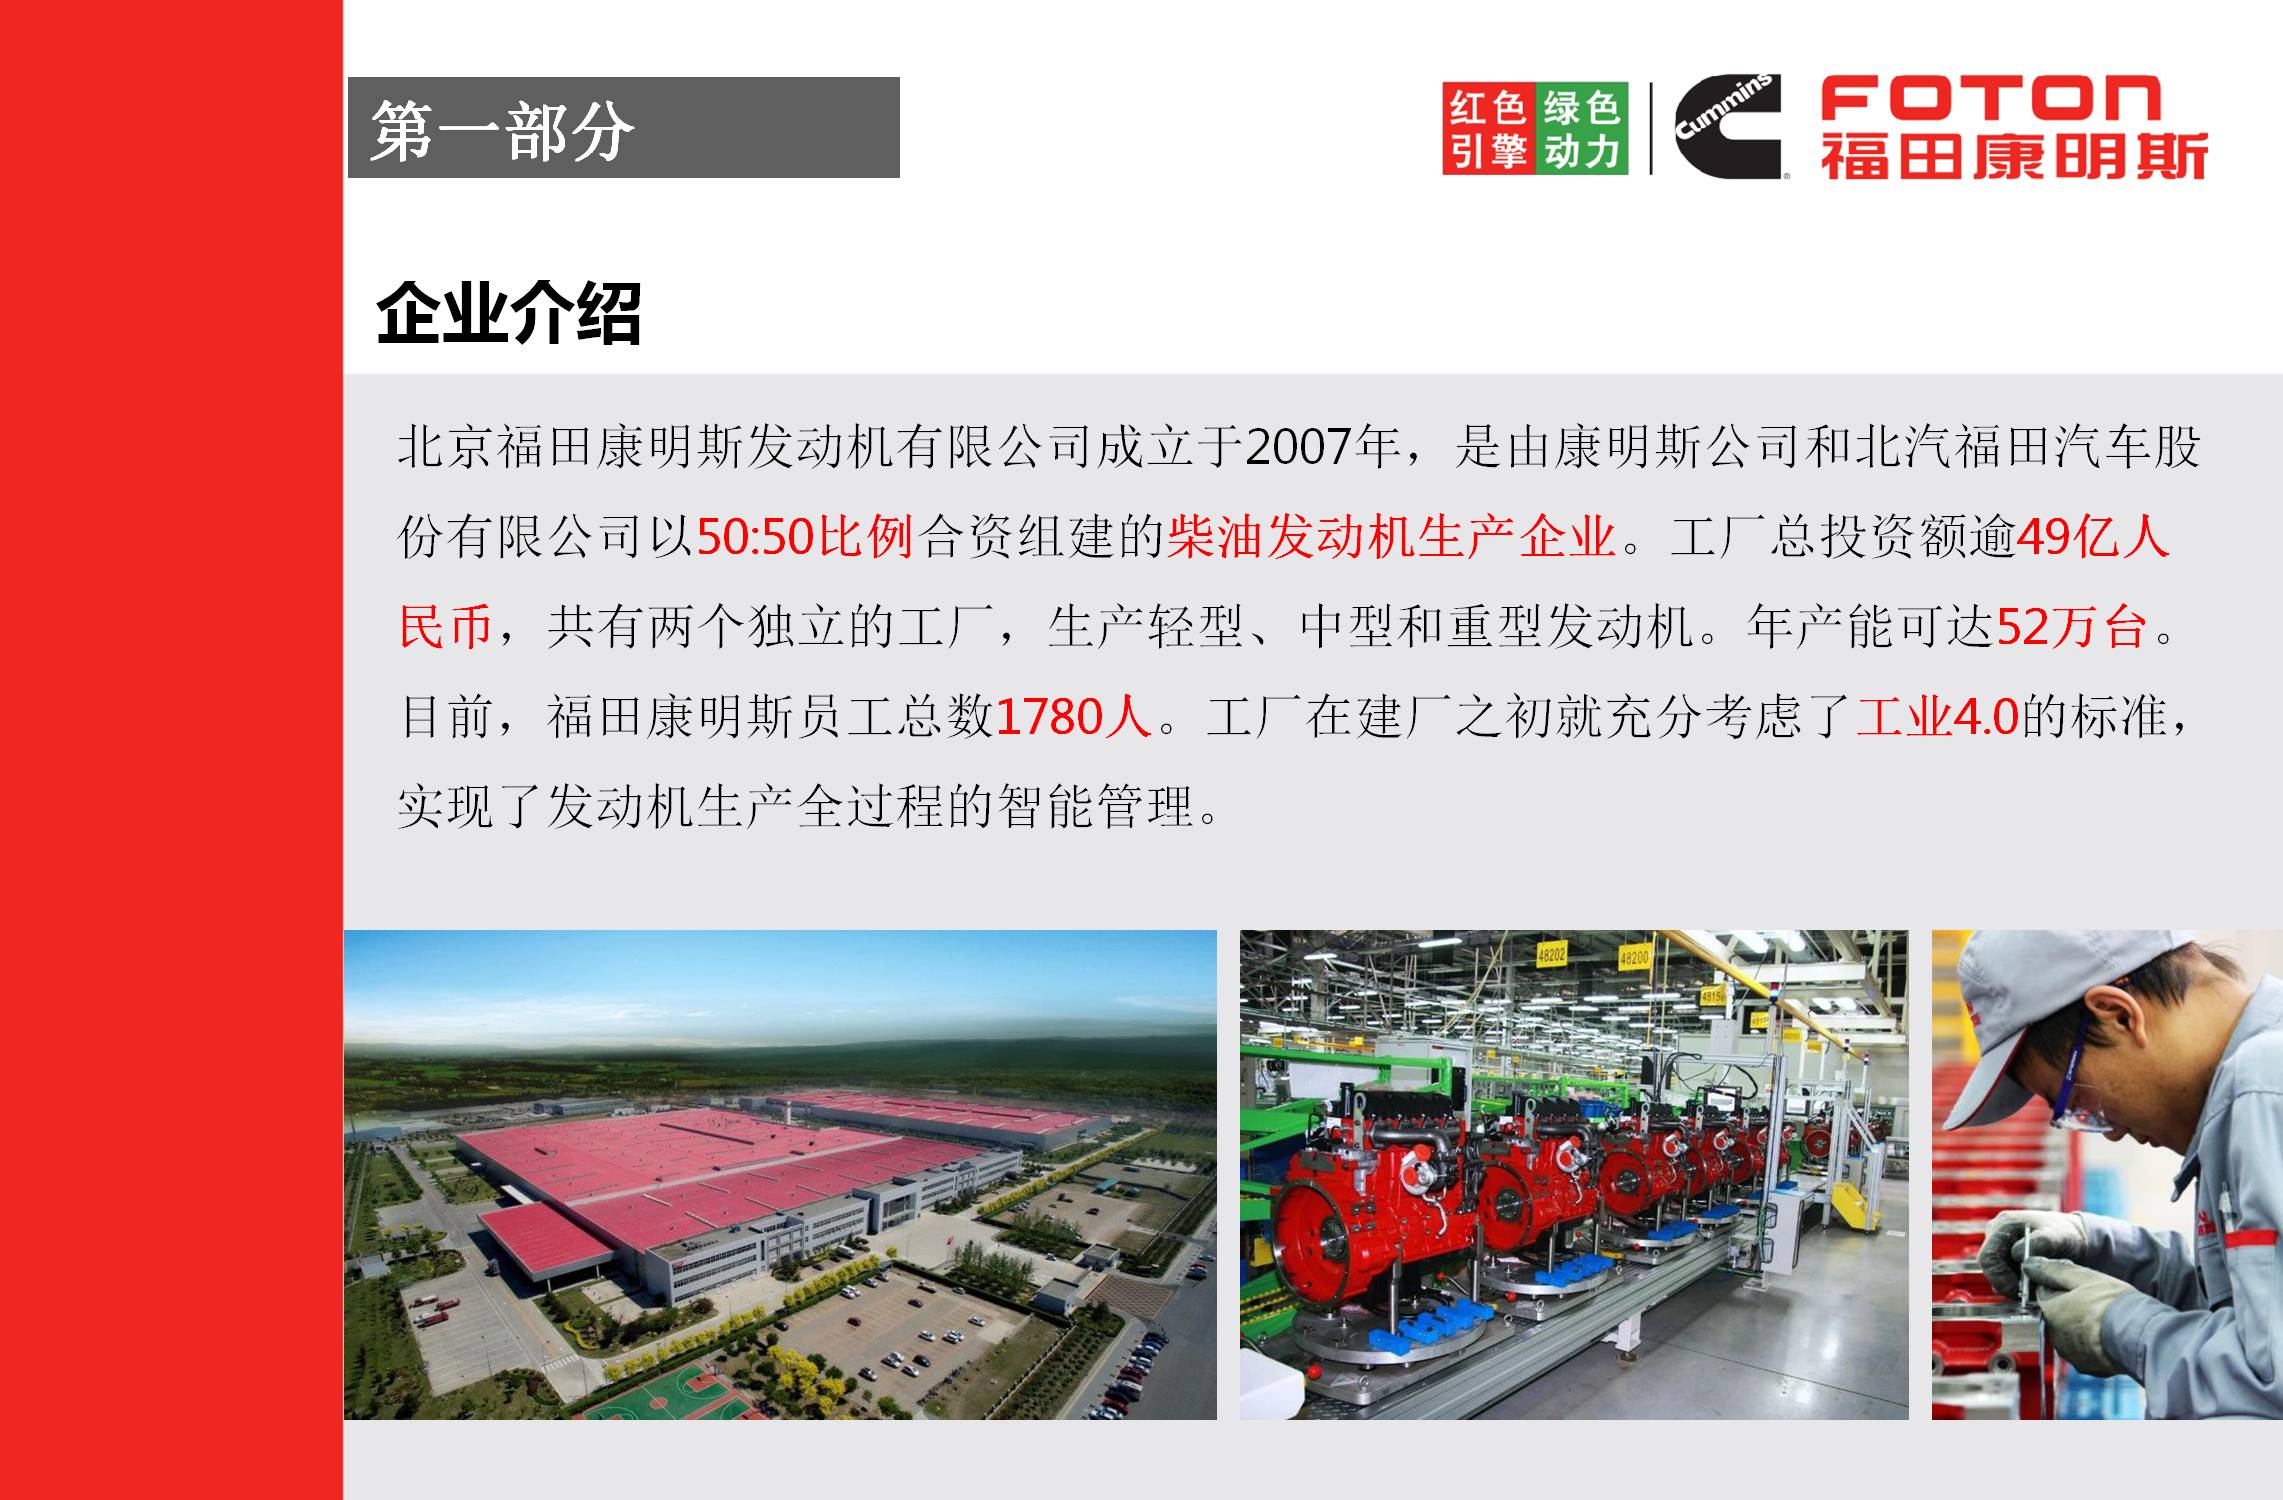 北京福田康明斯发动机有限公司《红色引擎 绿色动力》